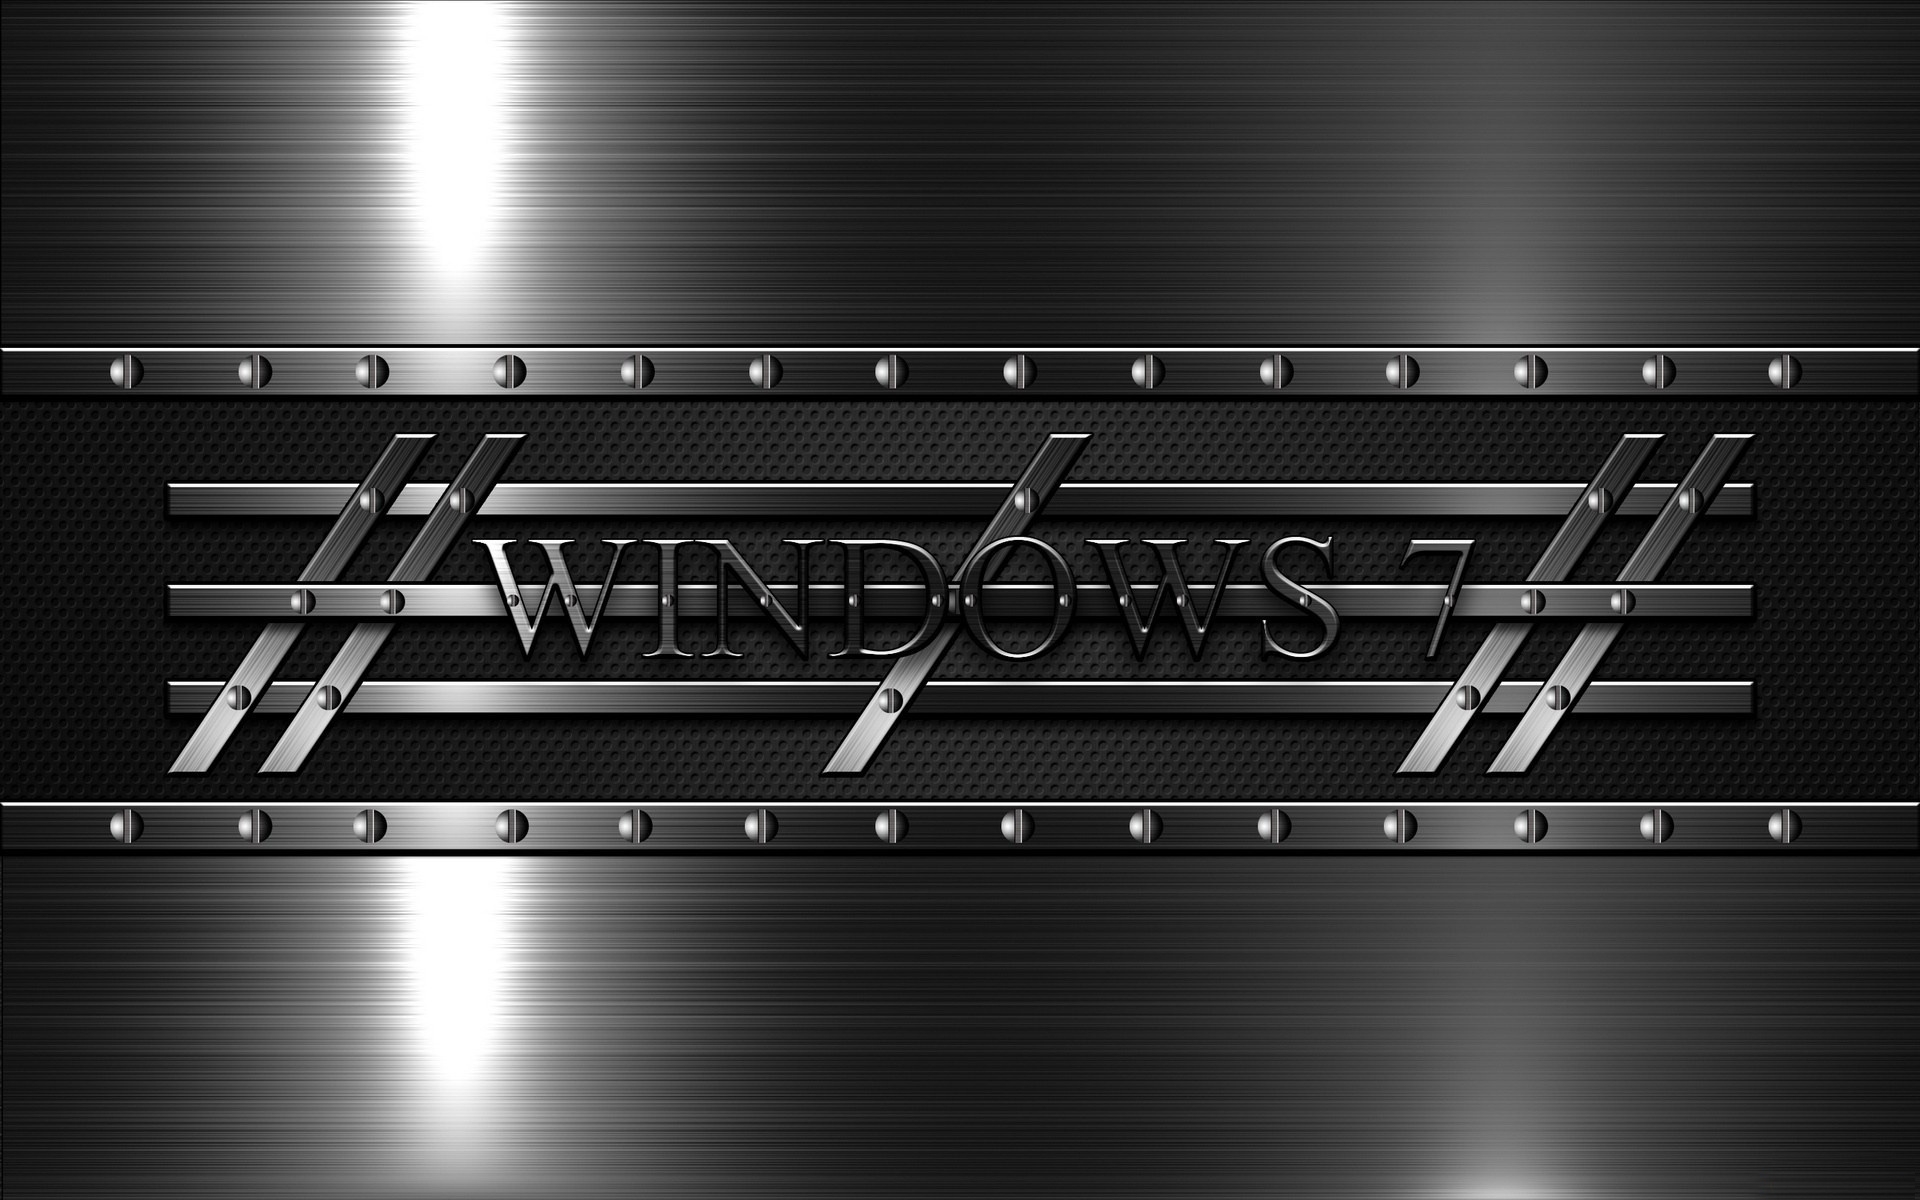 Fondos de Pantalla Windows 7, Microsoft Windows, Metal, Monocromo, Negro,  Imágenes y Fotos Gratis